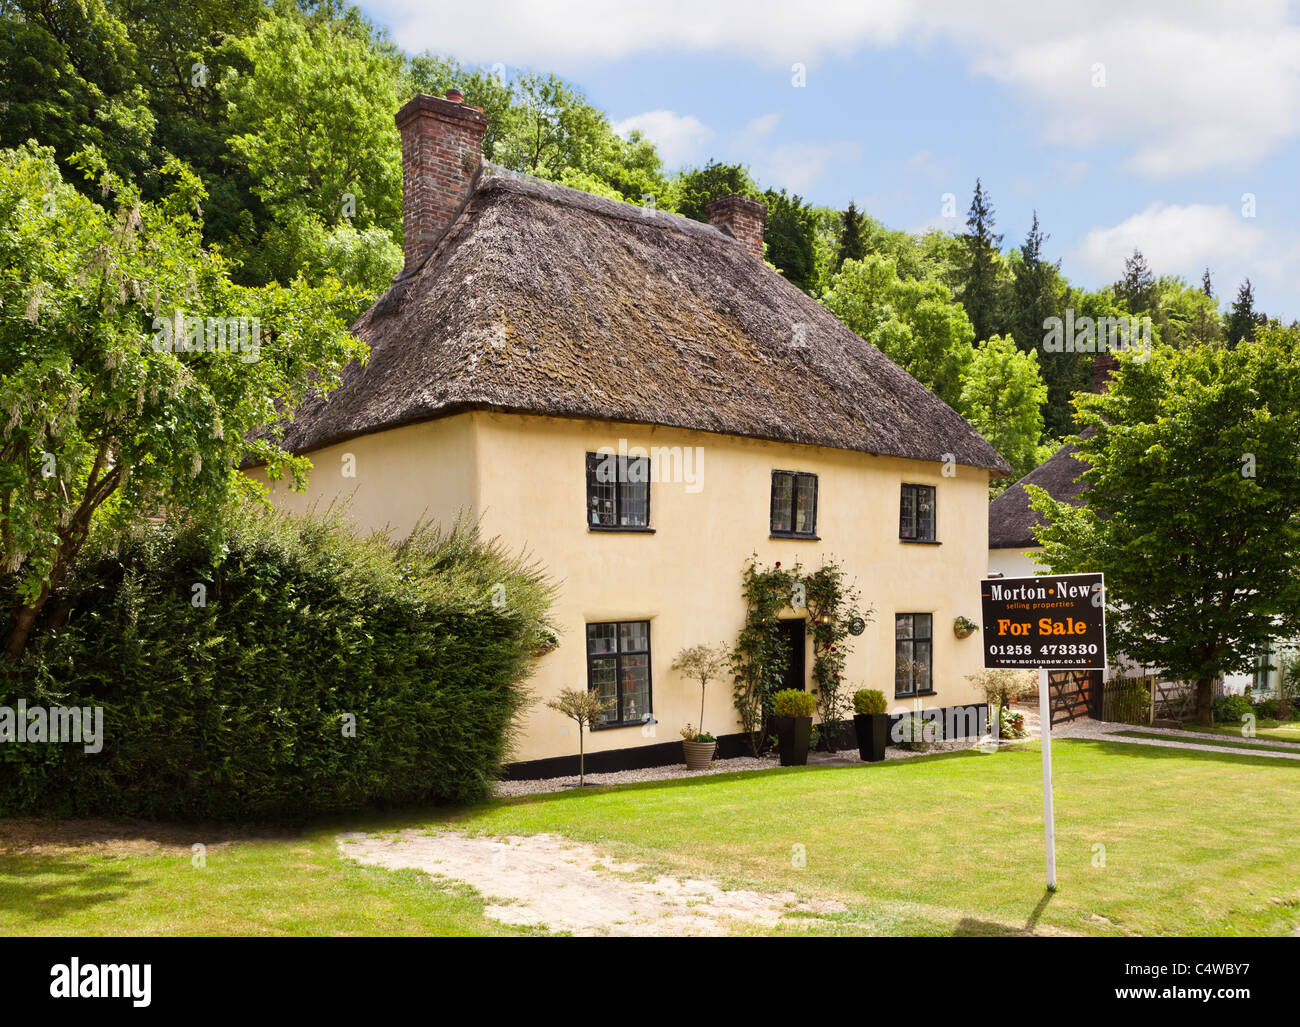 Casa in vendita - Inglese staccato cottage con il tetto di paglia per la vendita, in Inghilterra, Regno Unito Foto Stock